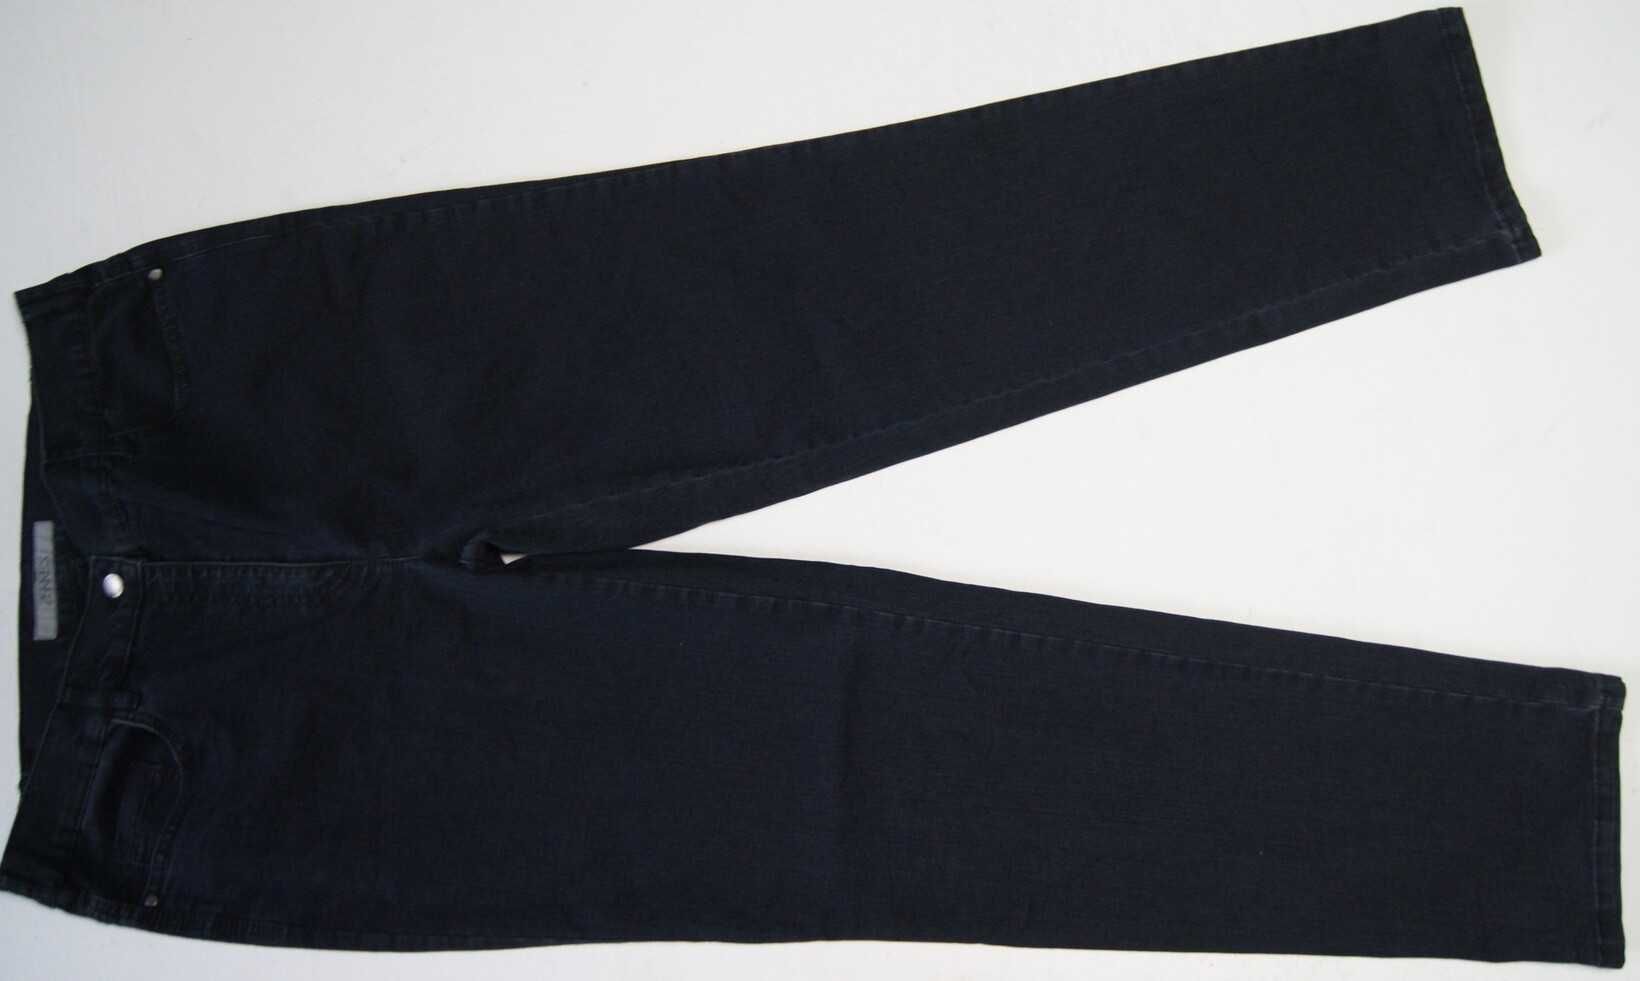 ZERRES COMFORT 46 spodnie damskie jeansy z elastanem jak nowe